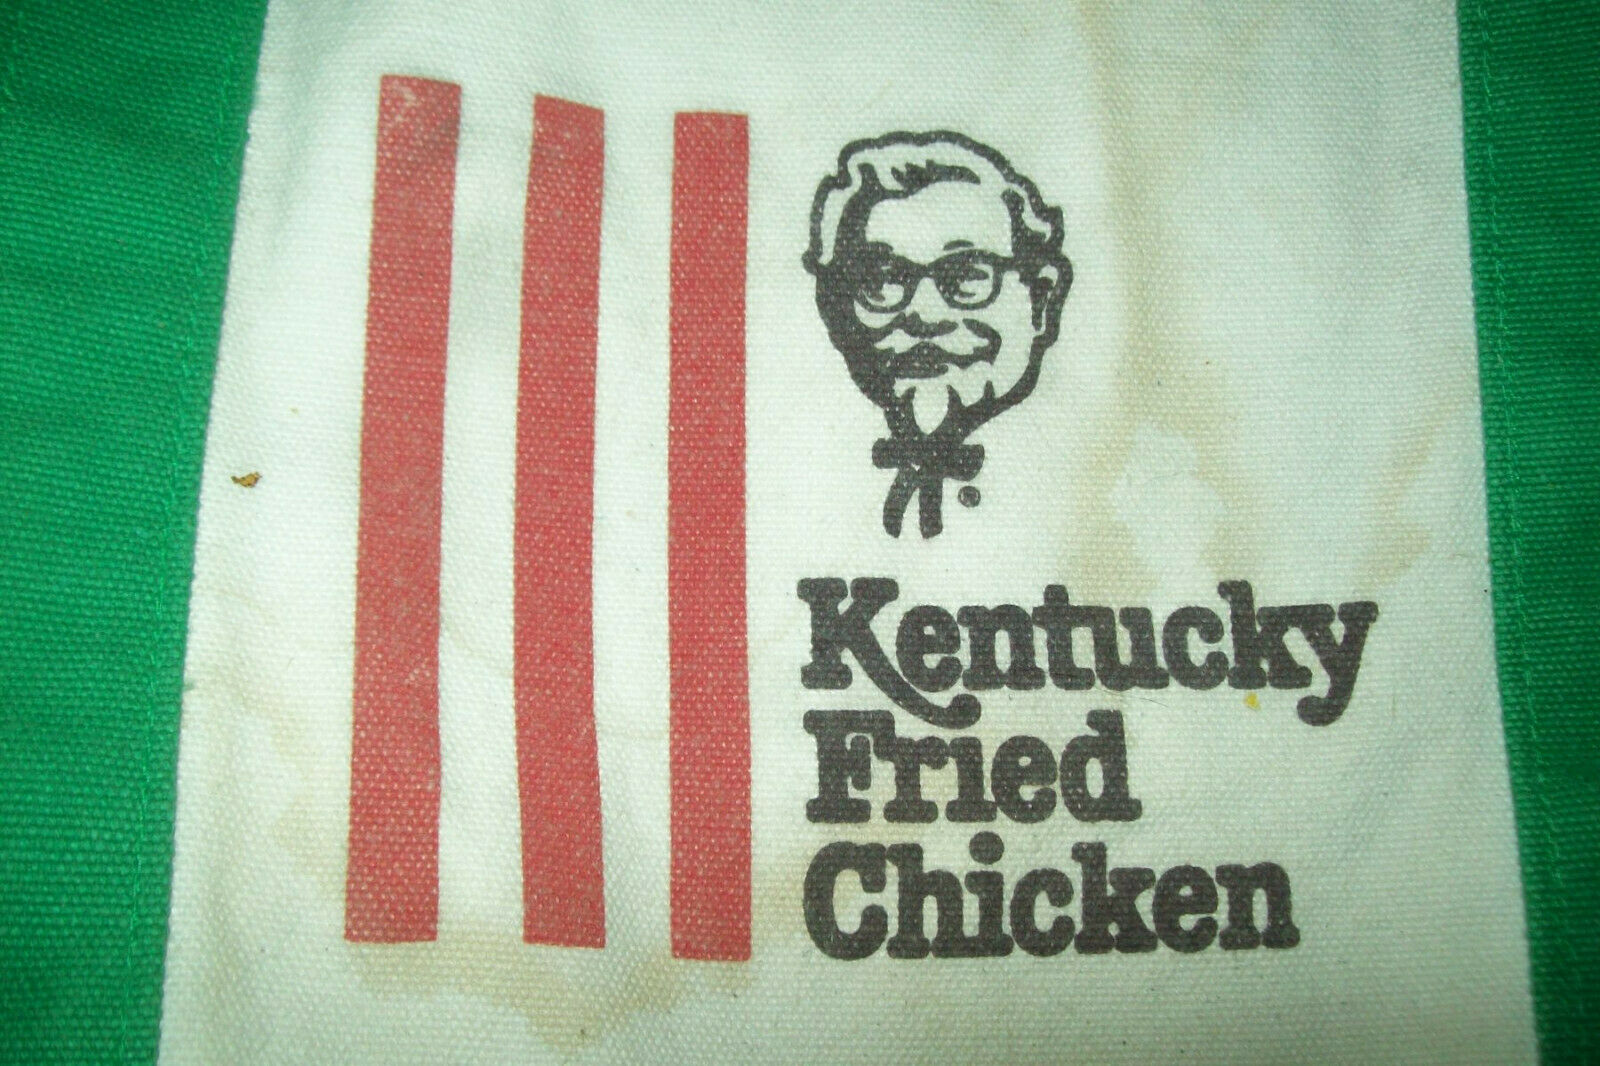 kentucky fried chicken near me specials